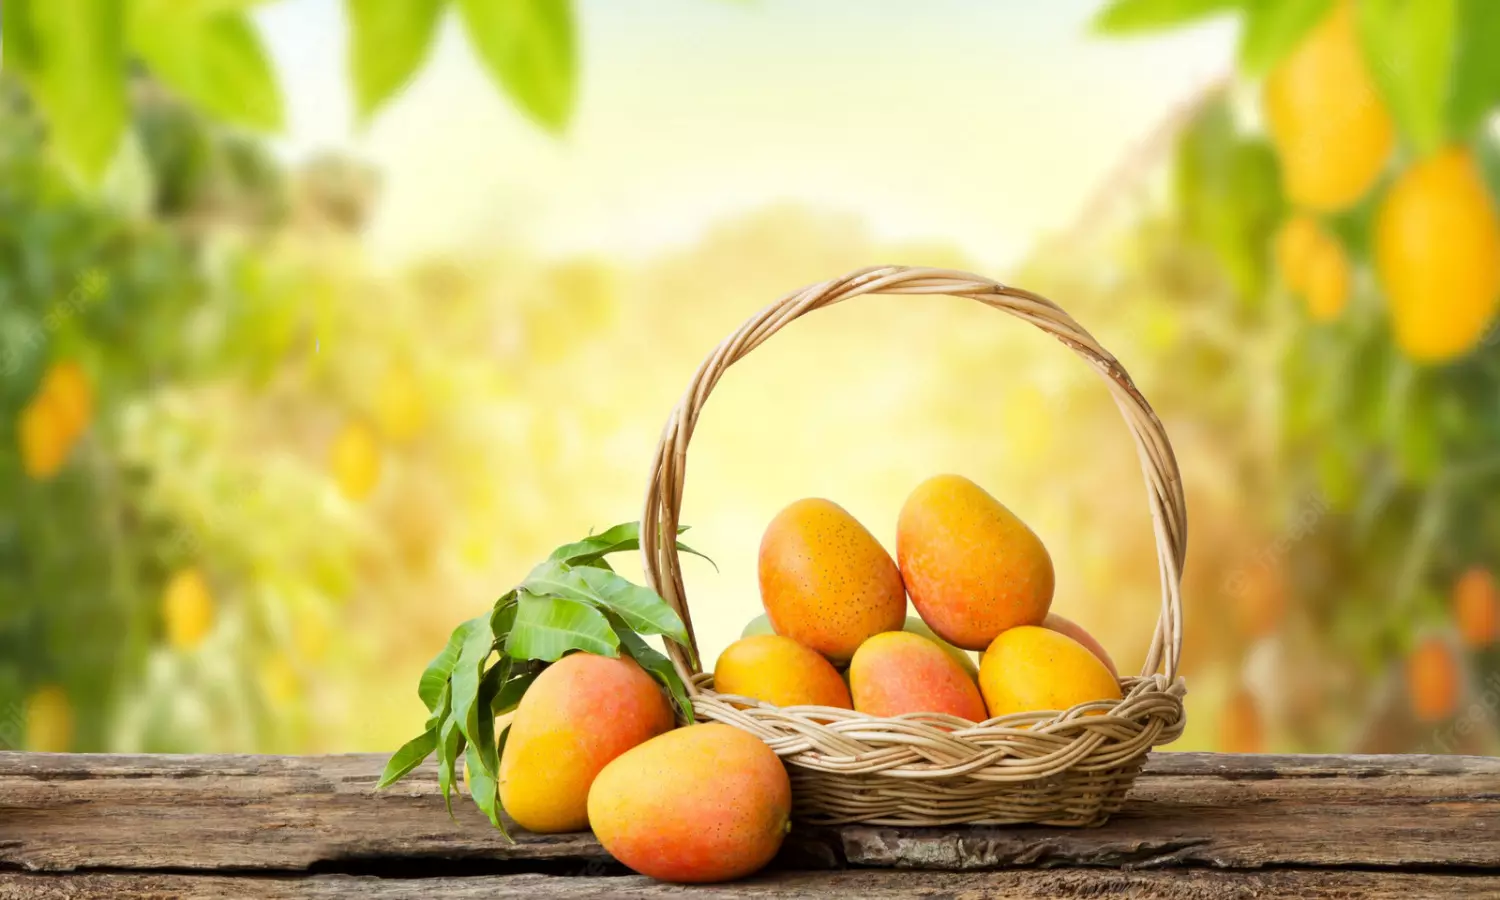 Side effects of Mango